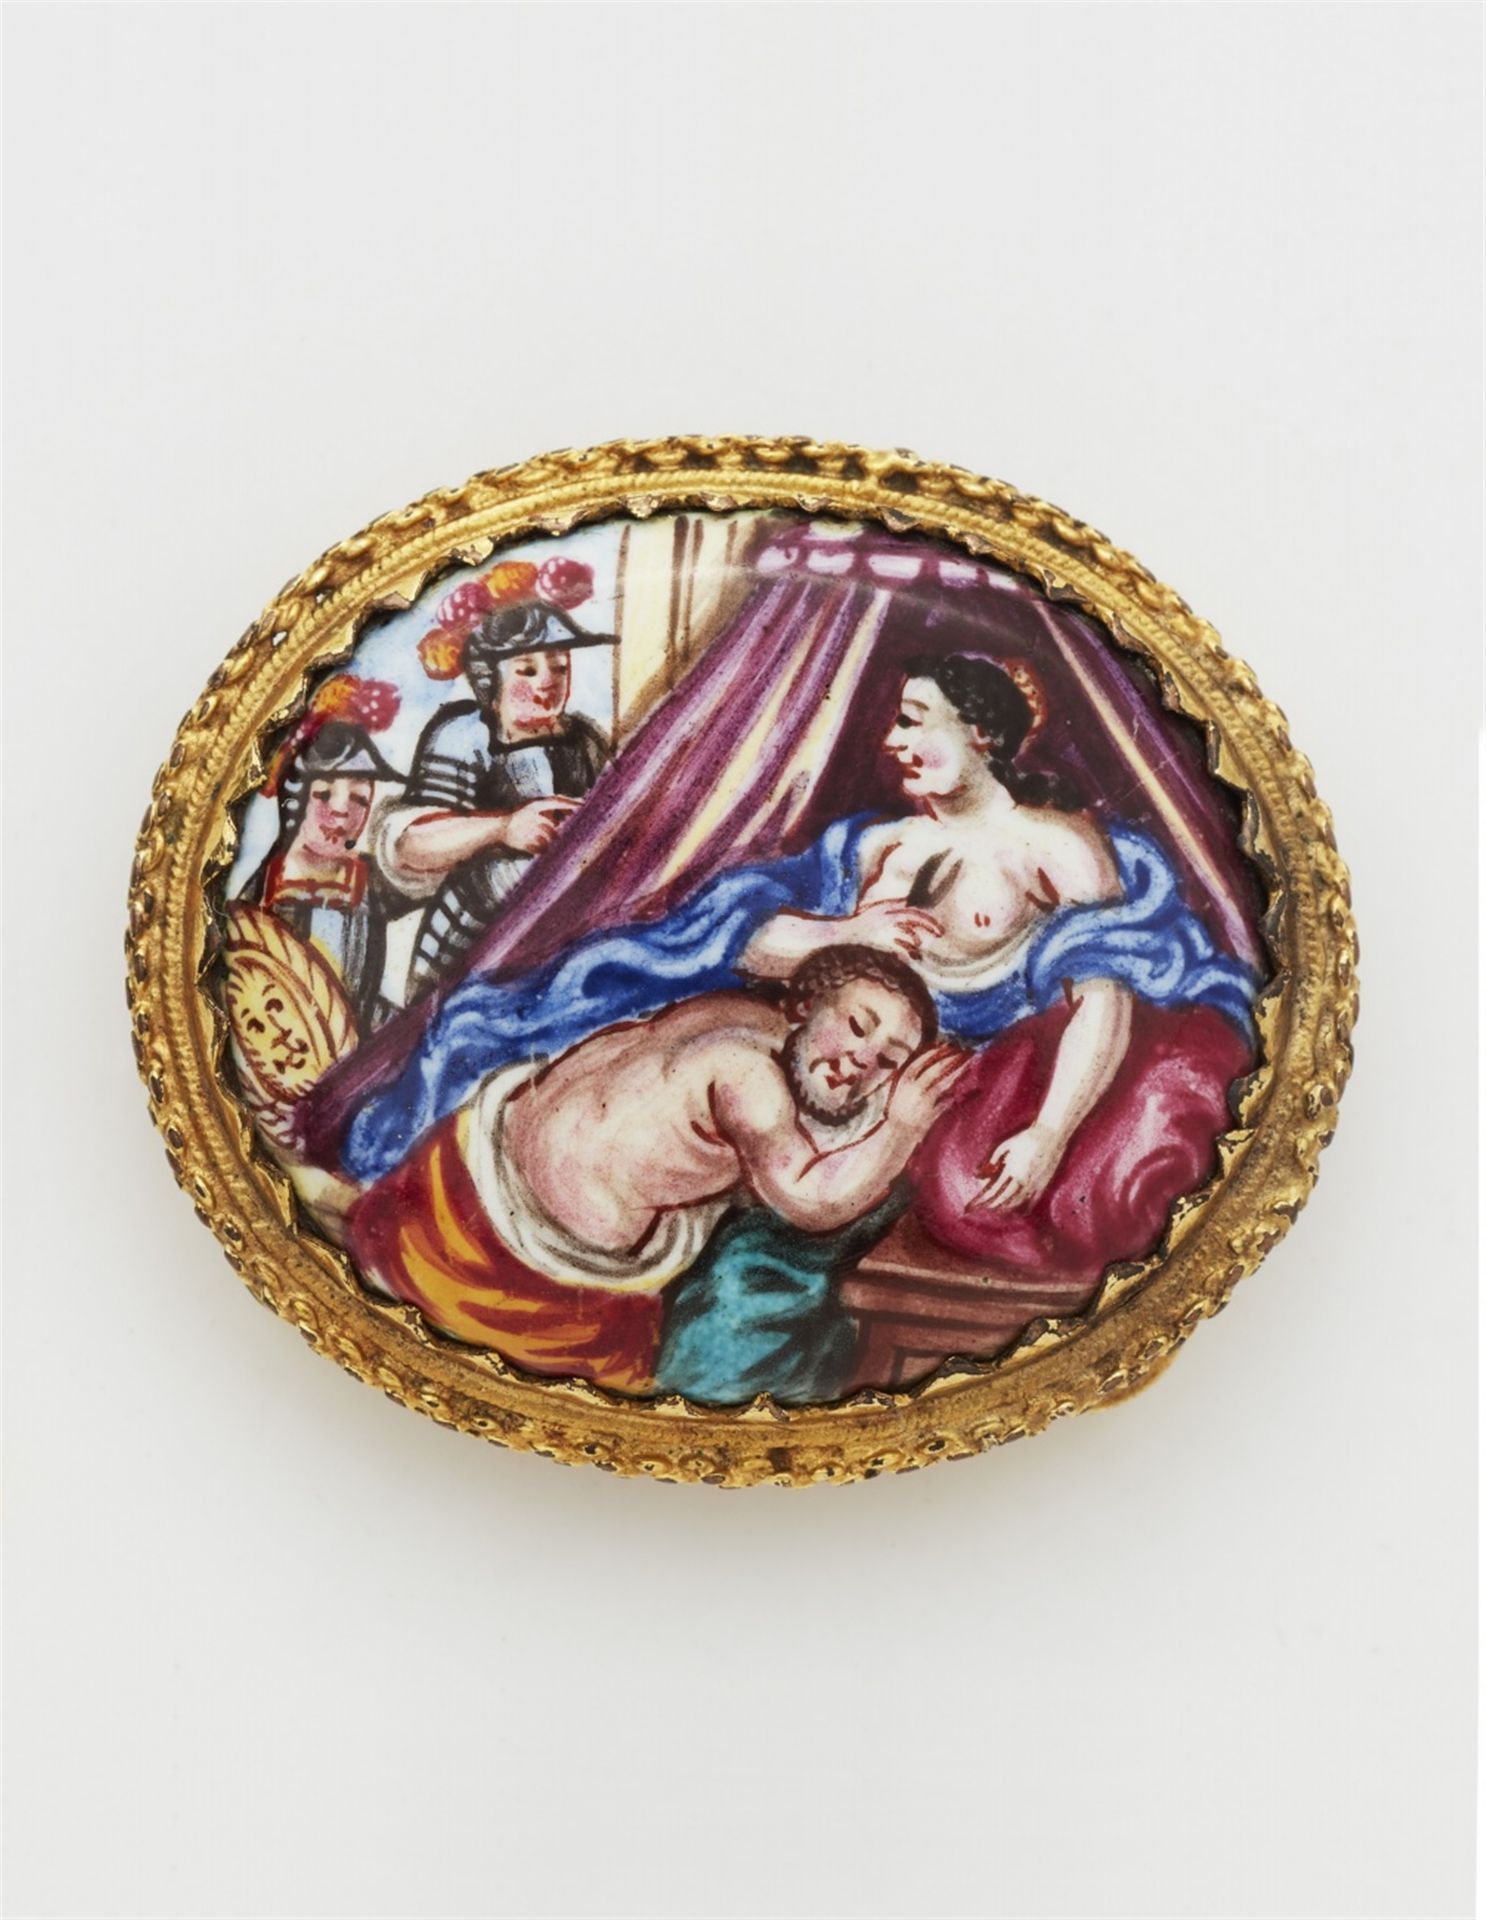 An enamel brooch depicting Samson and Delilah